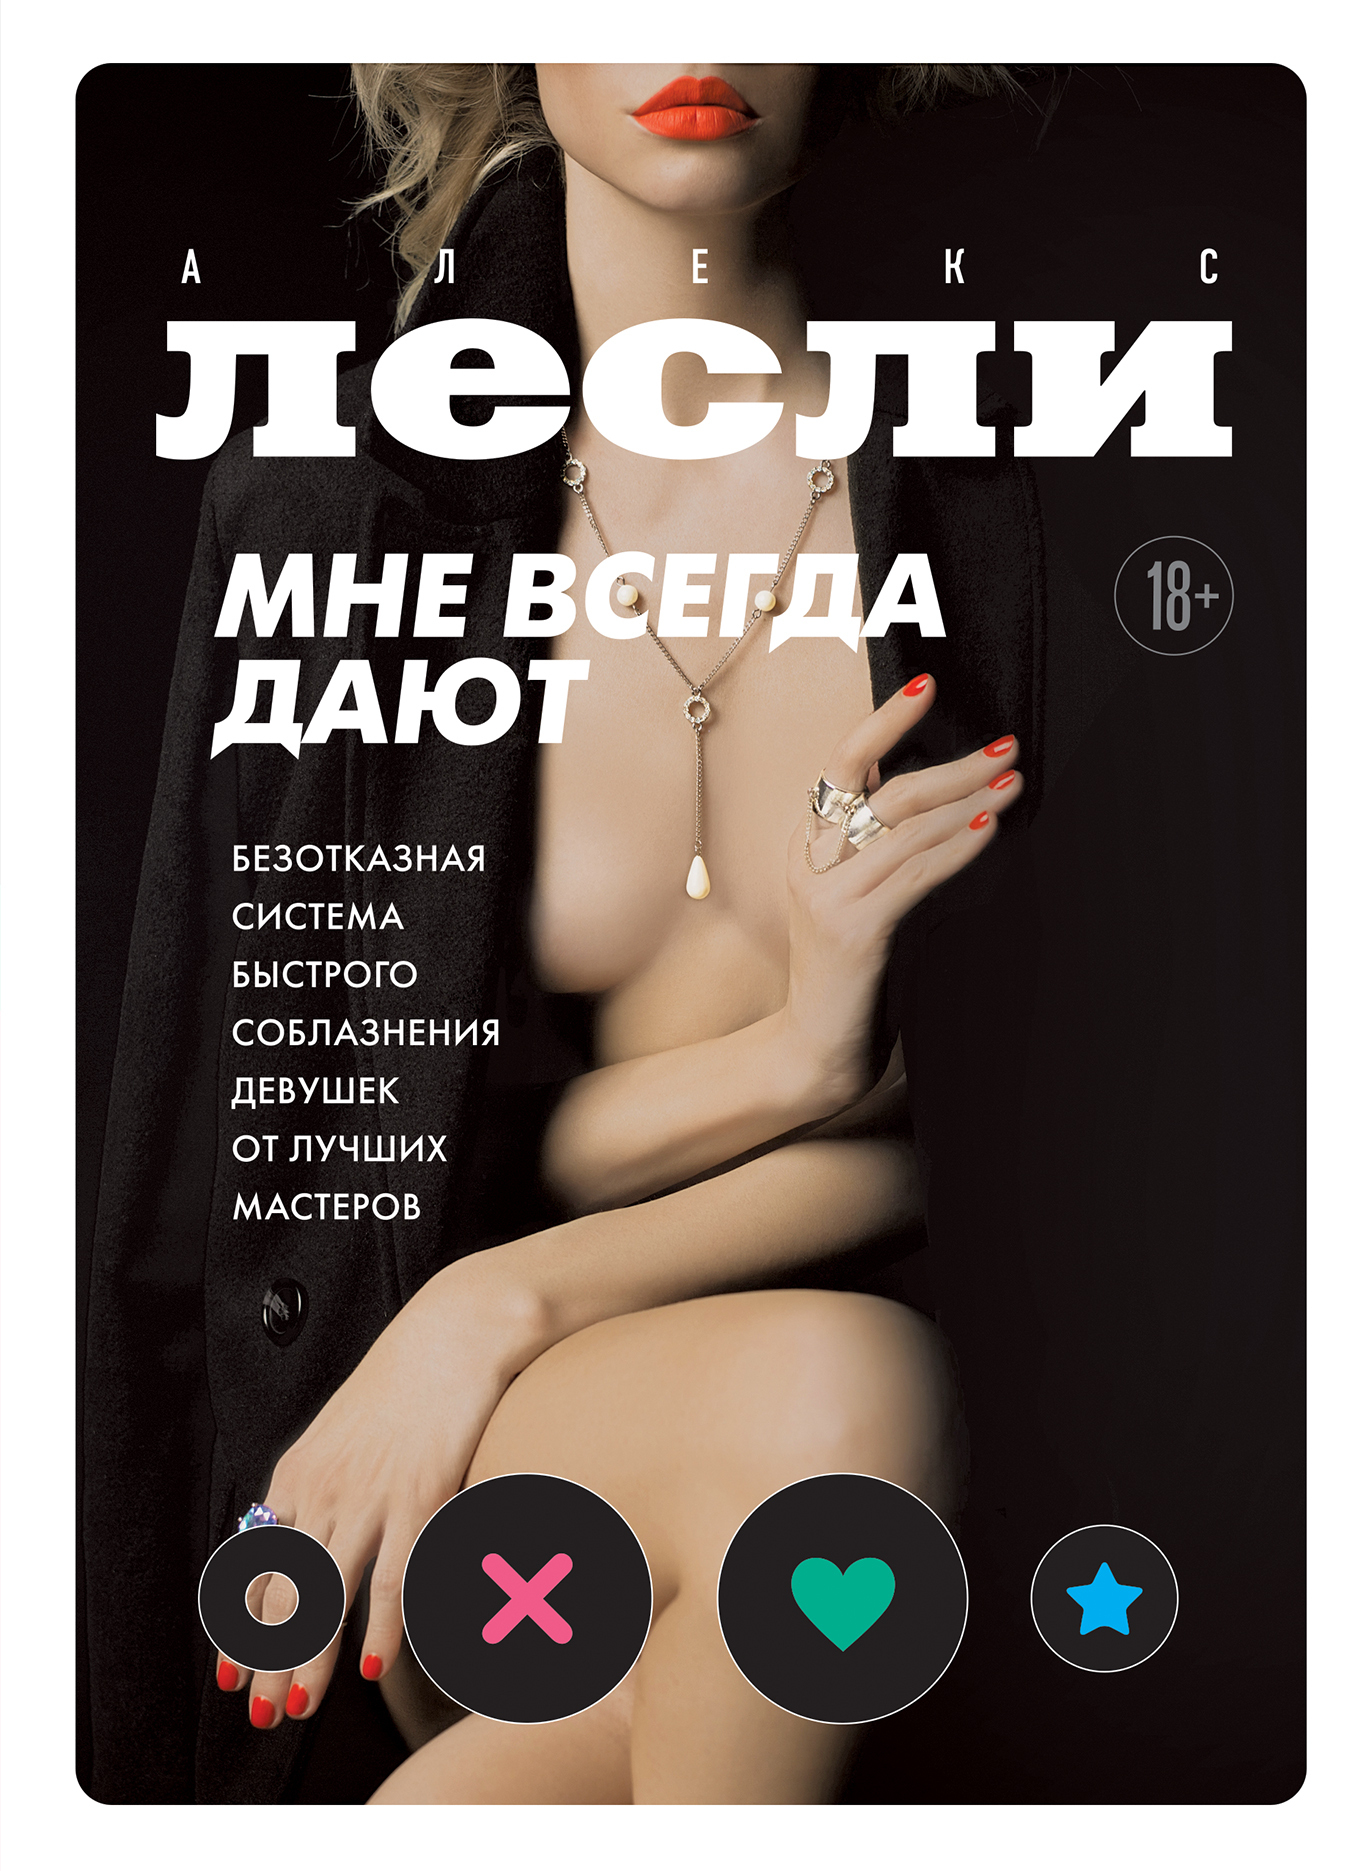 Порно, снятое на телефон открыто и скрытно смотреть бесплатно онлайн на Ебучке.